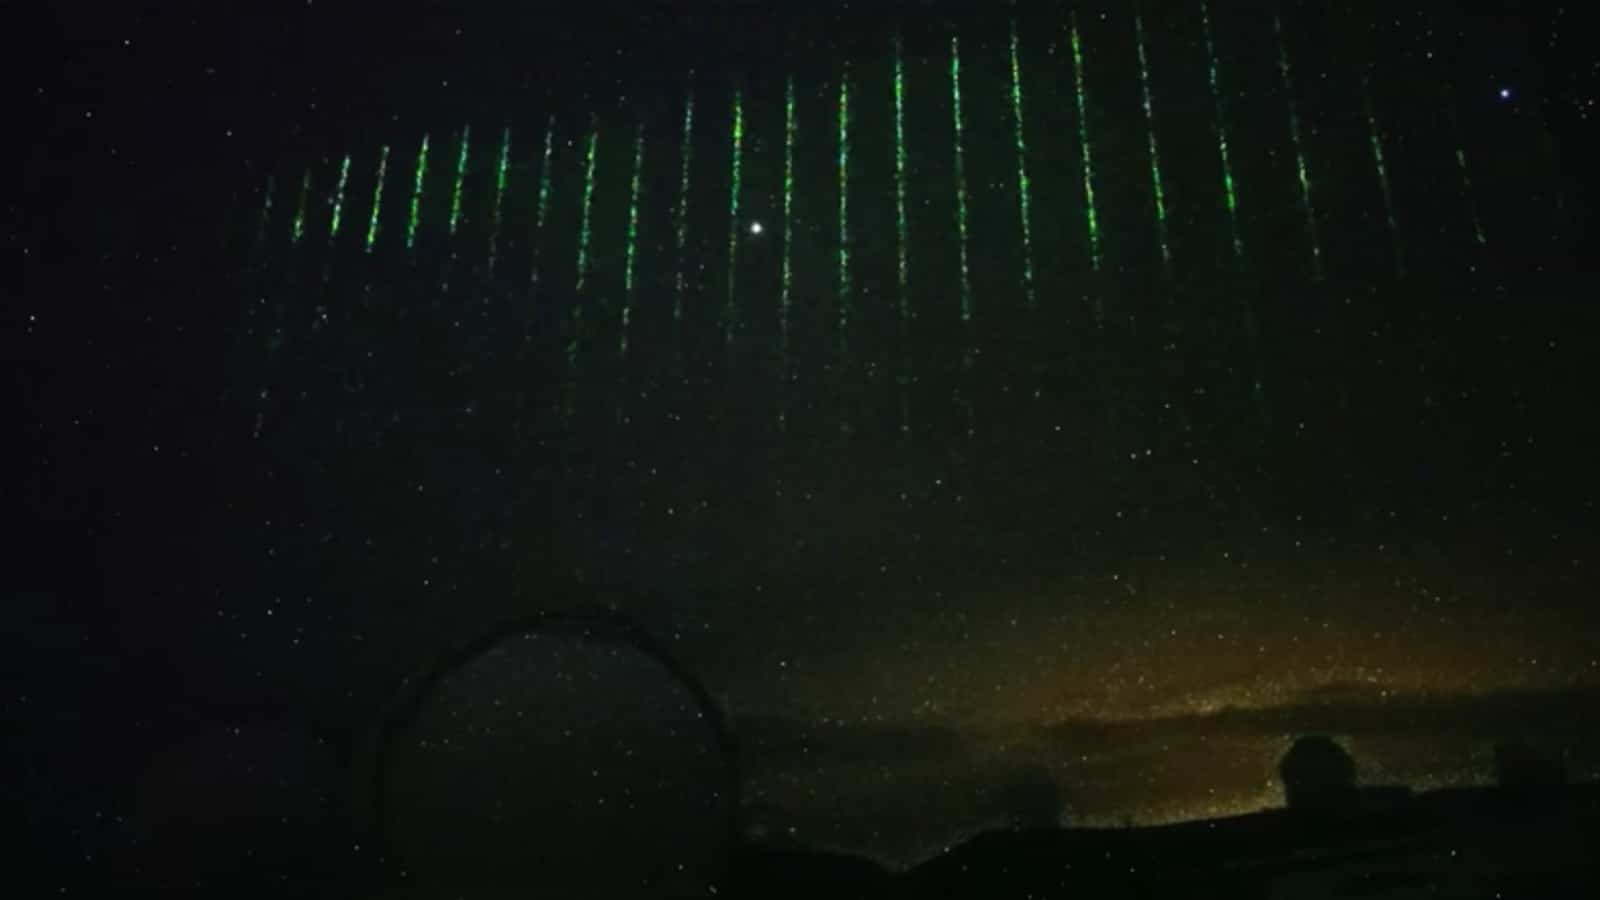 ハワイ上空に不気味な緑色の光の壁が出現 – 中国の衛星からの可能性が高い